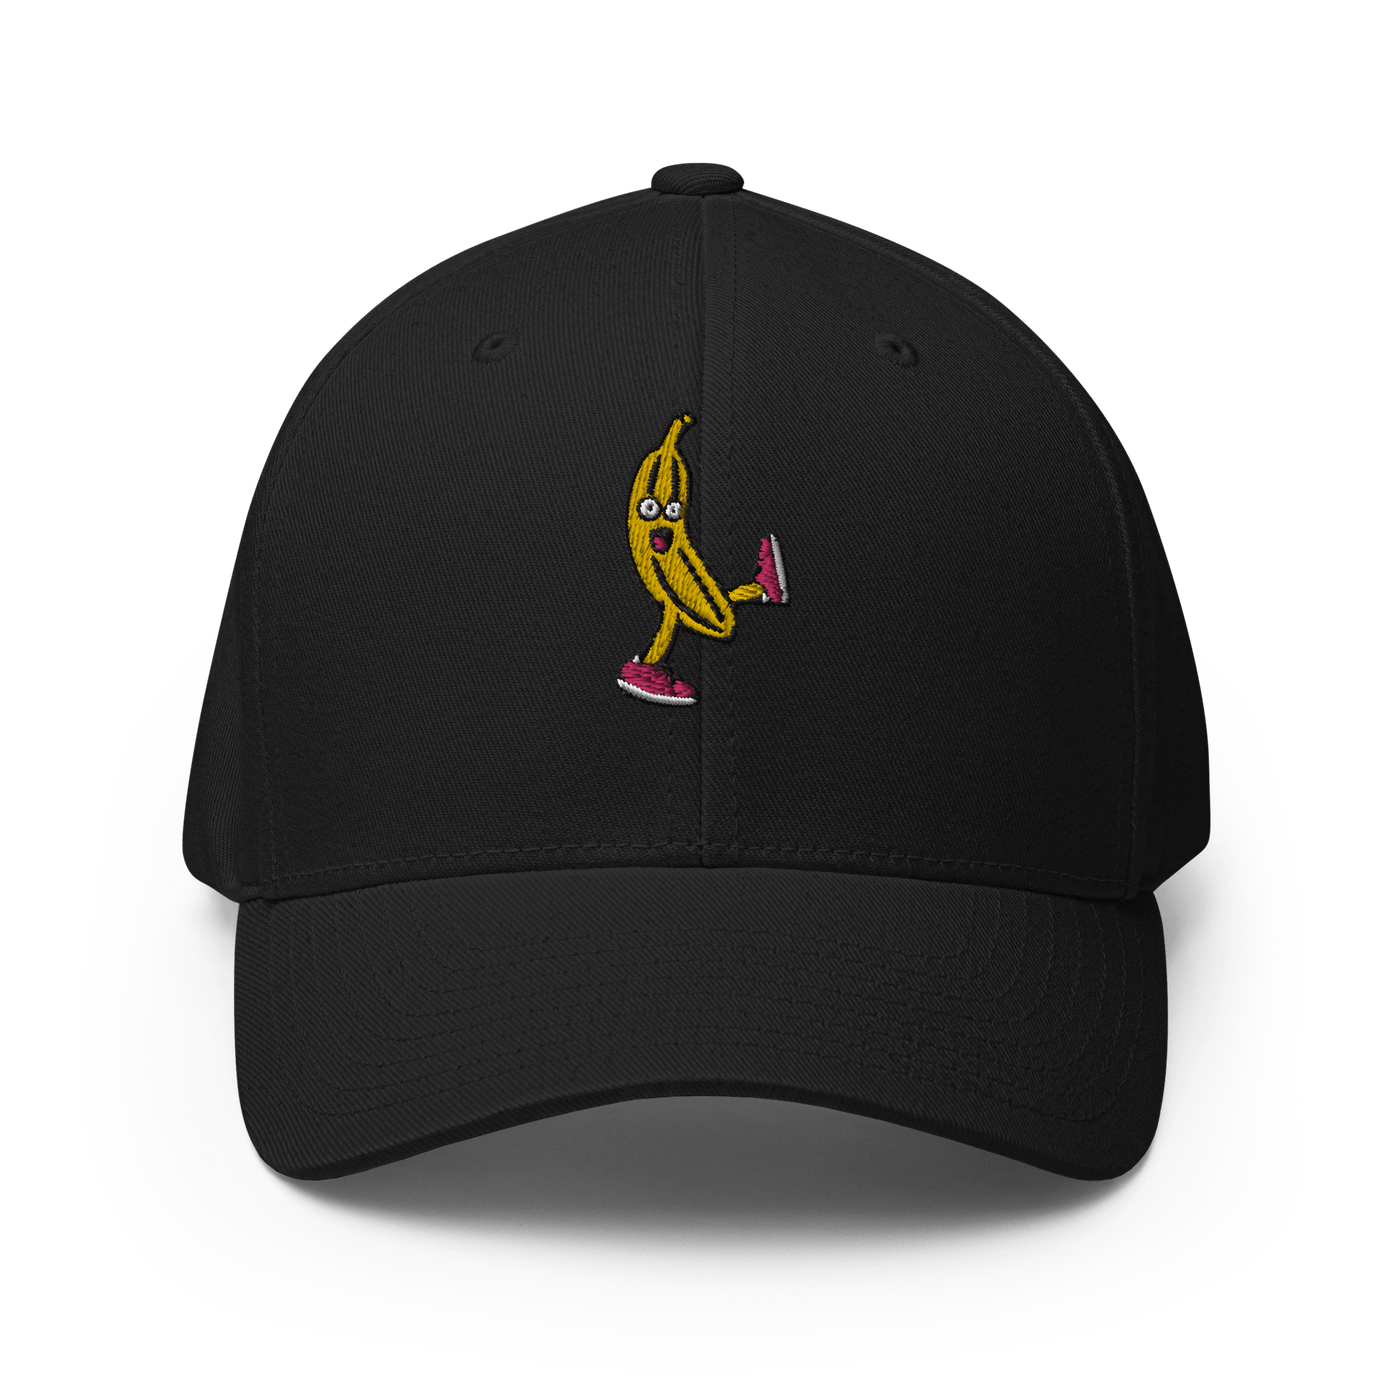 Drunk Banana Flexfit Cap - Black / S/M - OUTLET - Just Another Cap Store